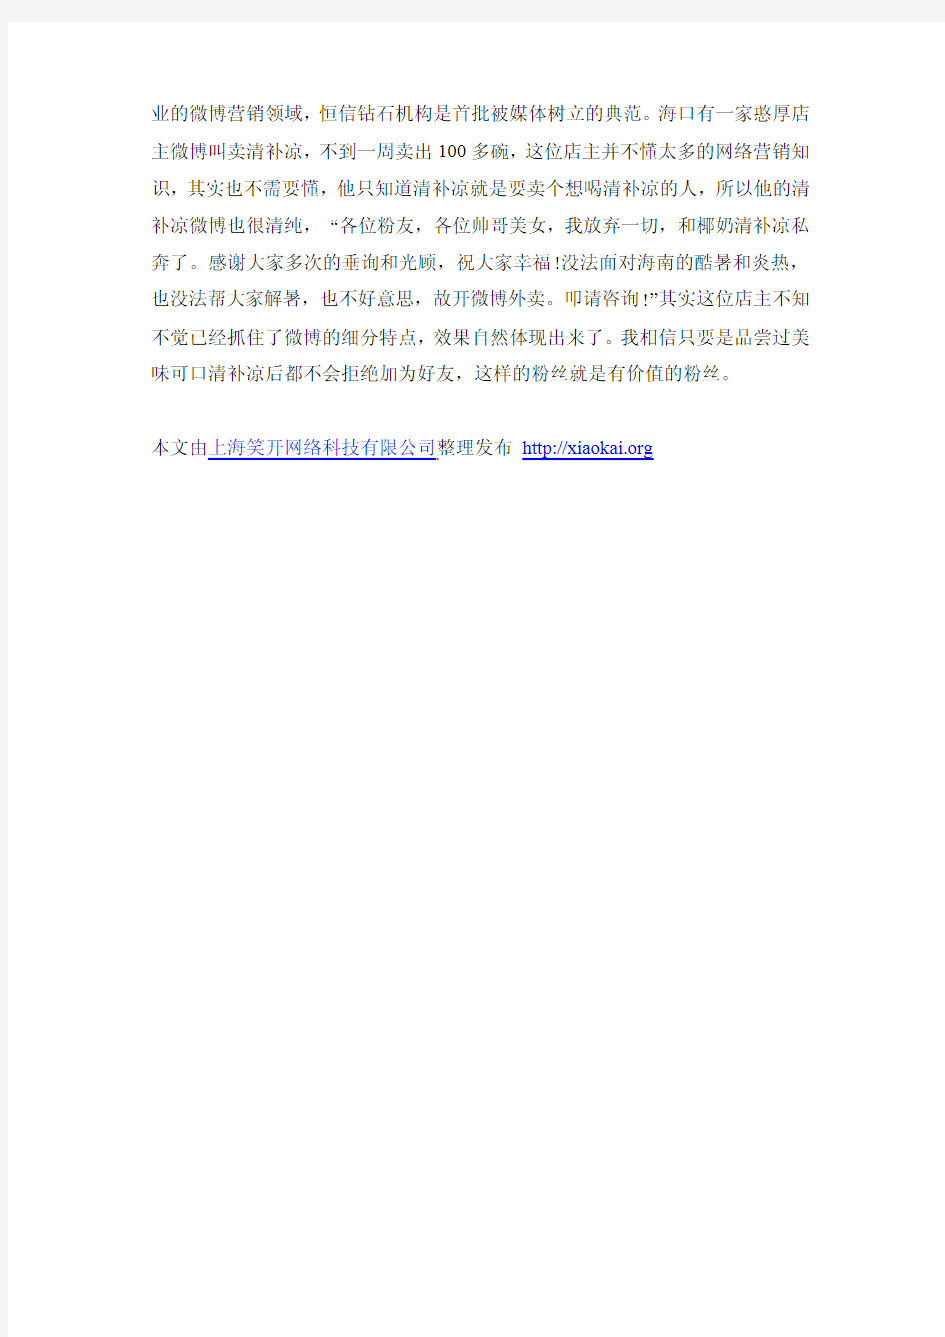 上海笑开网络科技有限公司浅析企业微博营销要注重细分1